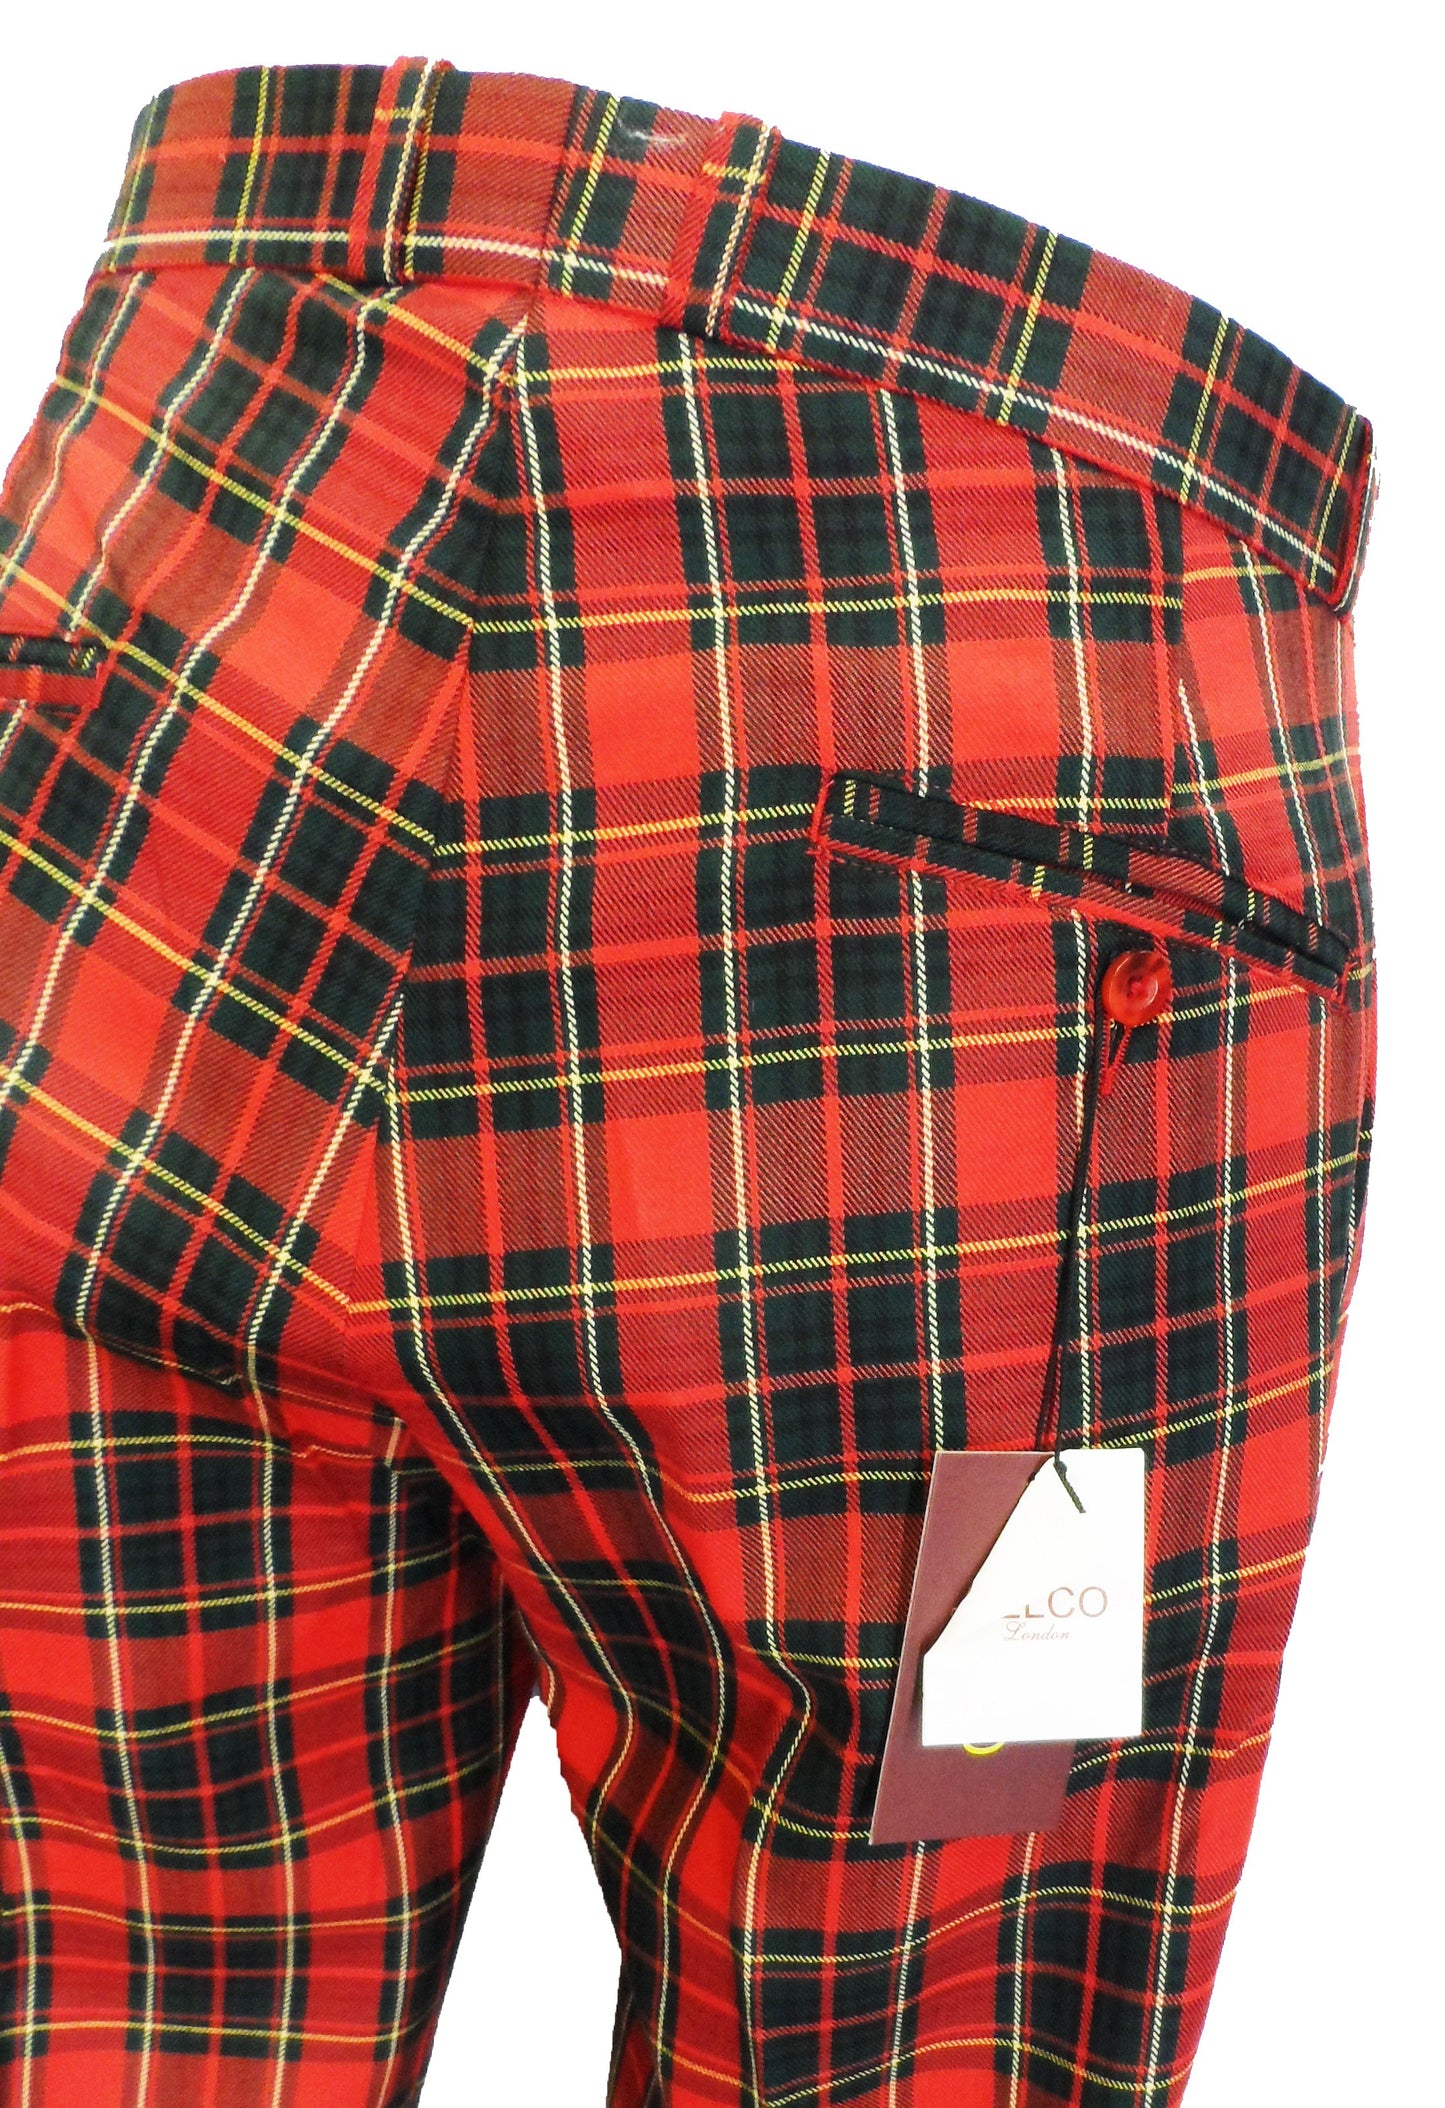 Tartan rouge années 60 70 rétro mod vintage Sta Press Trousers